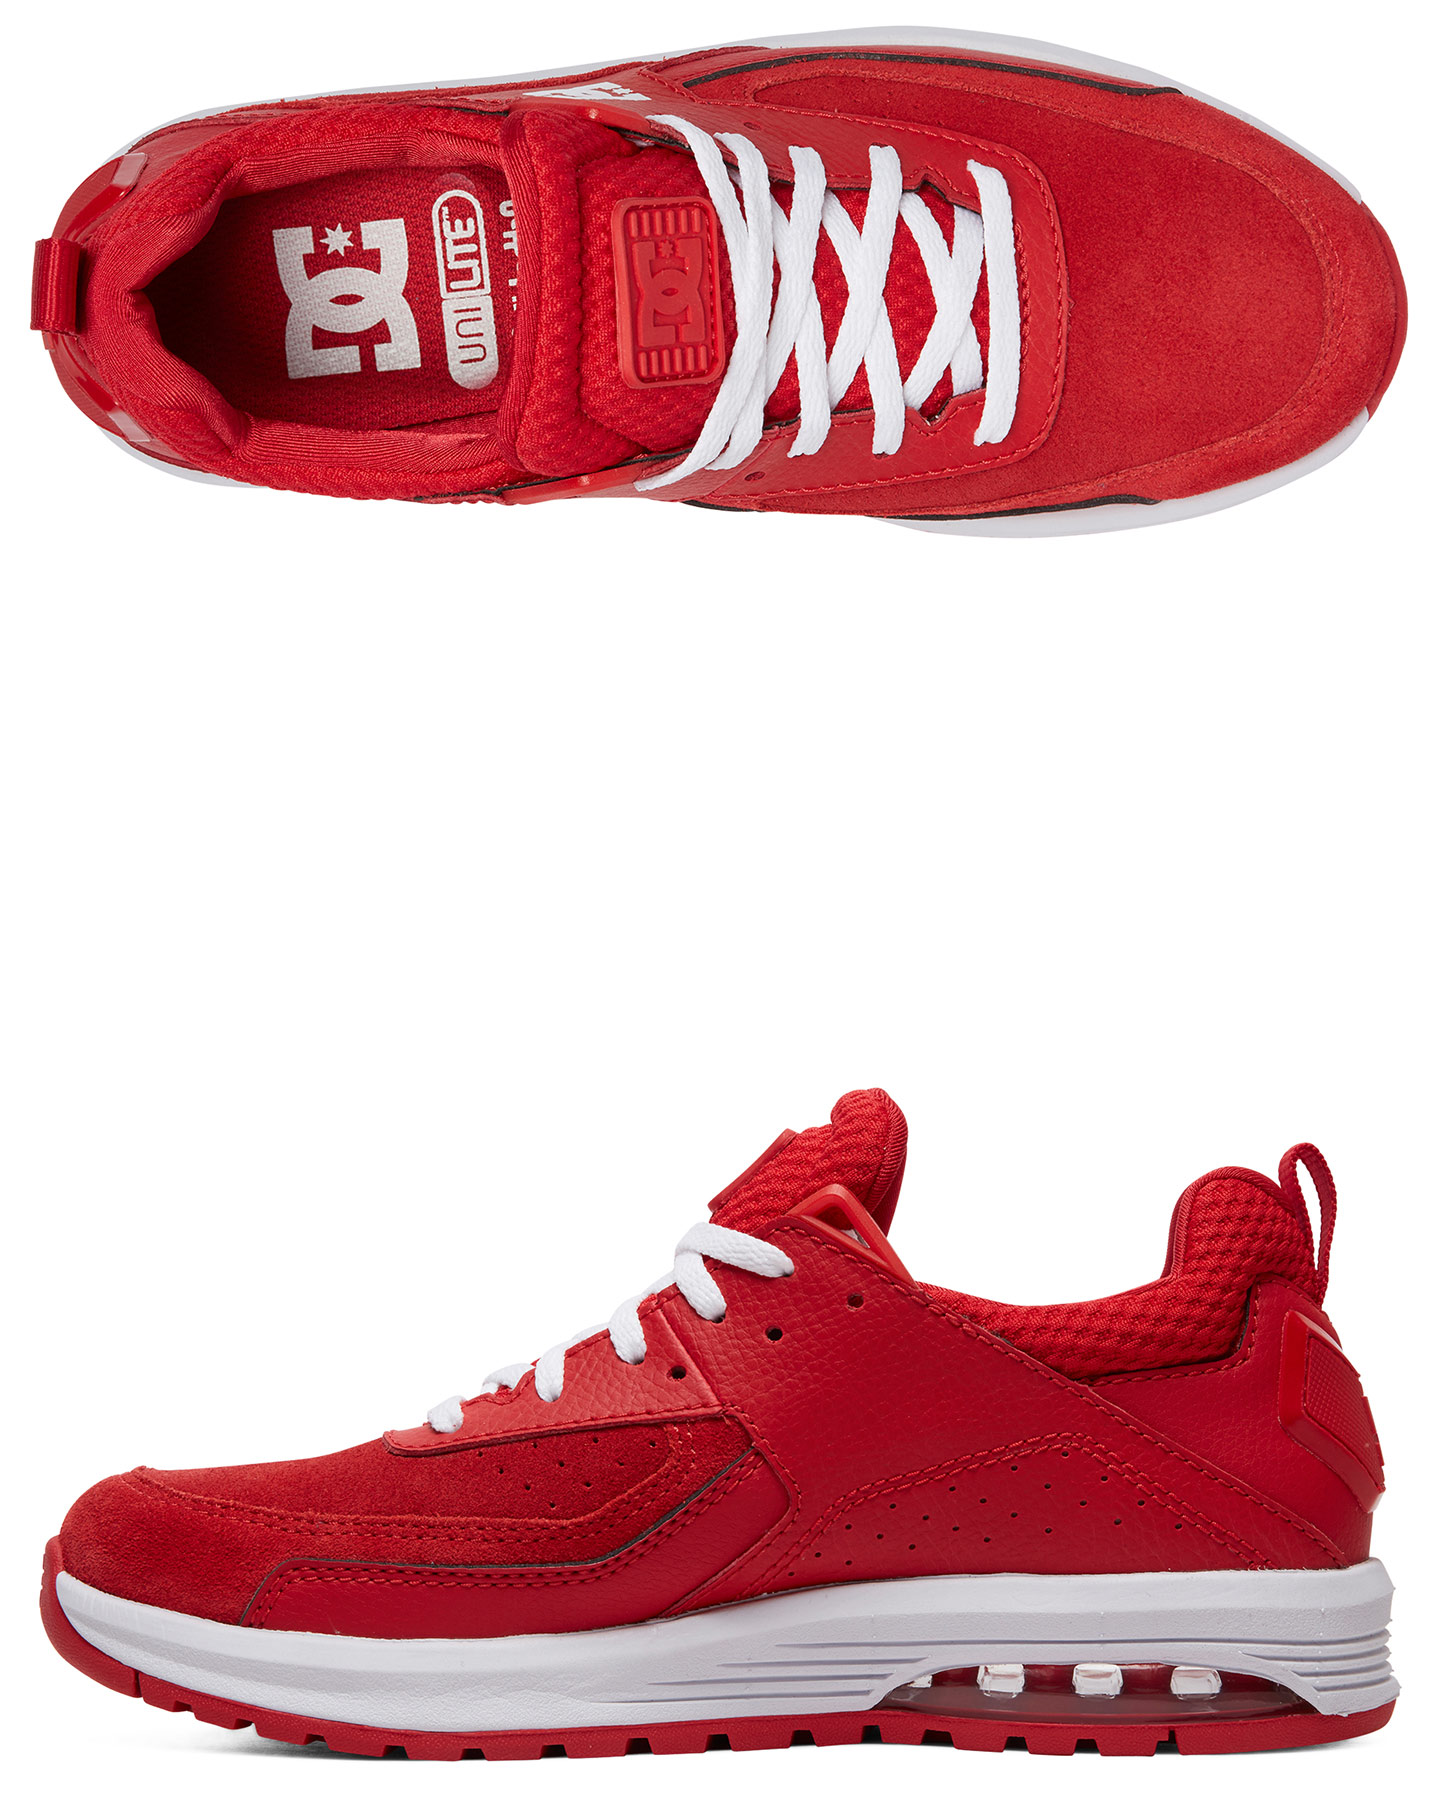 Dc Shoes Womens Vandium Se Shoe - Red 